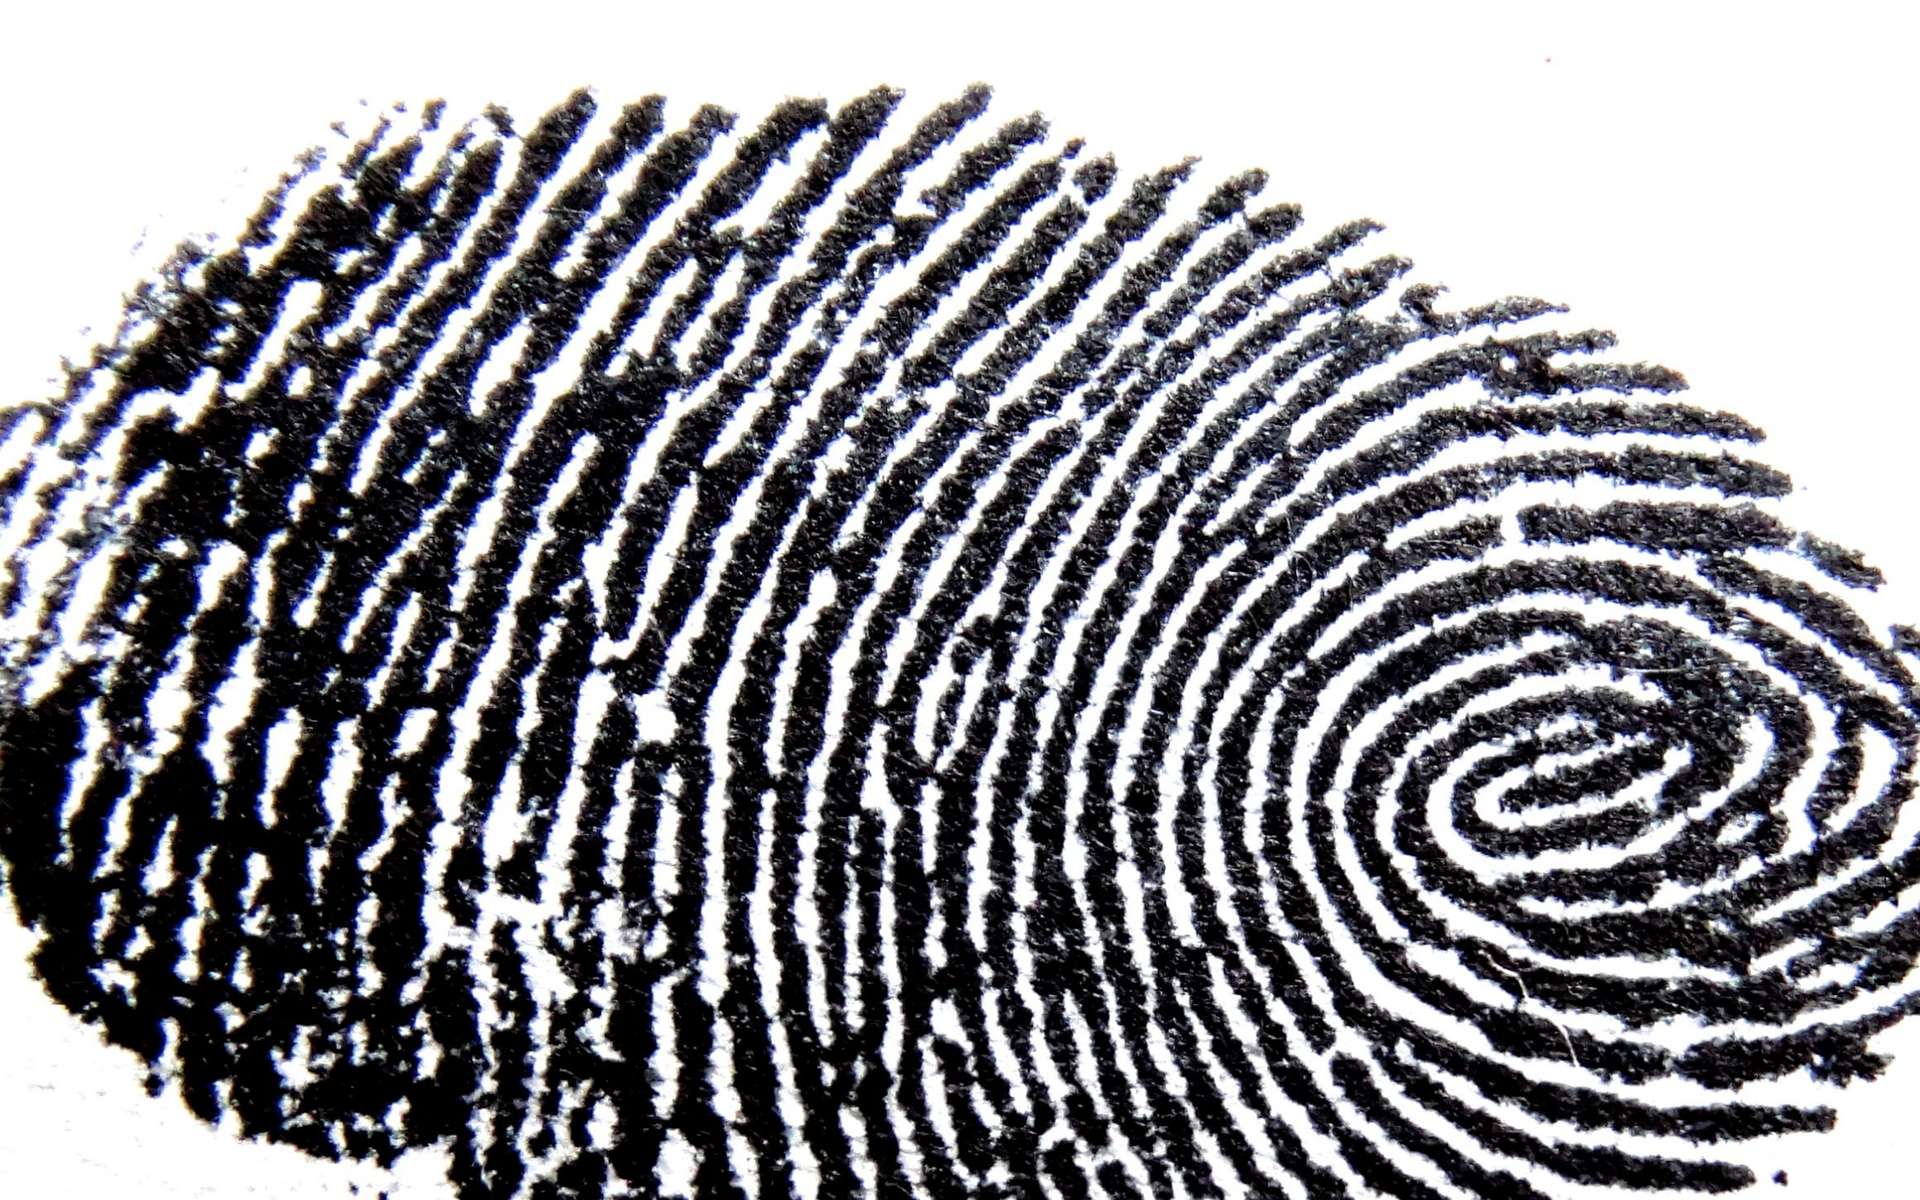 Le fingerprinting, en quelque sorte une empreinte numérique. © Piqsels